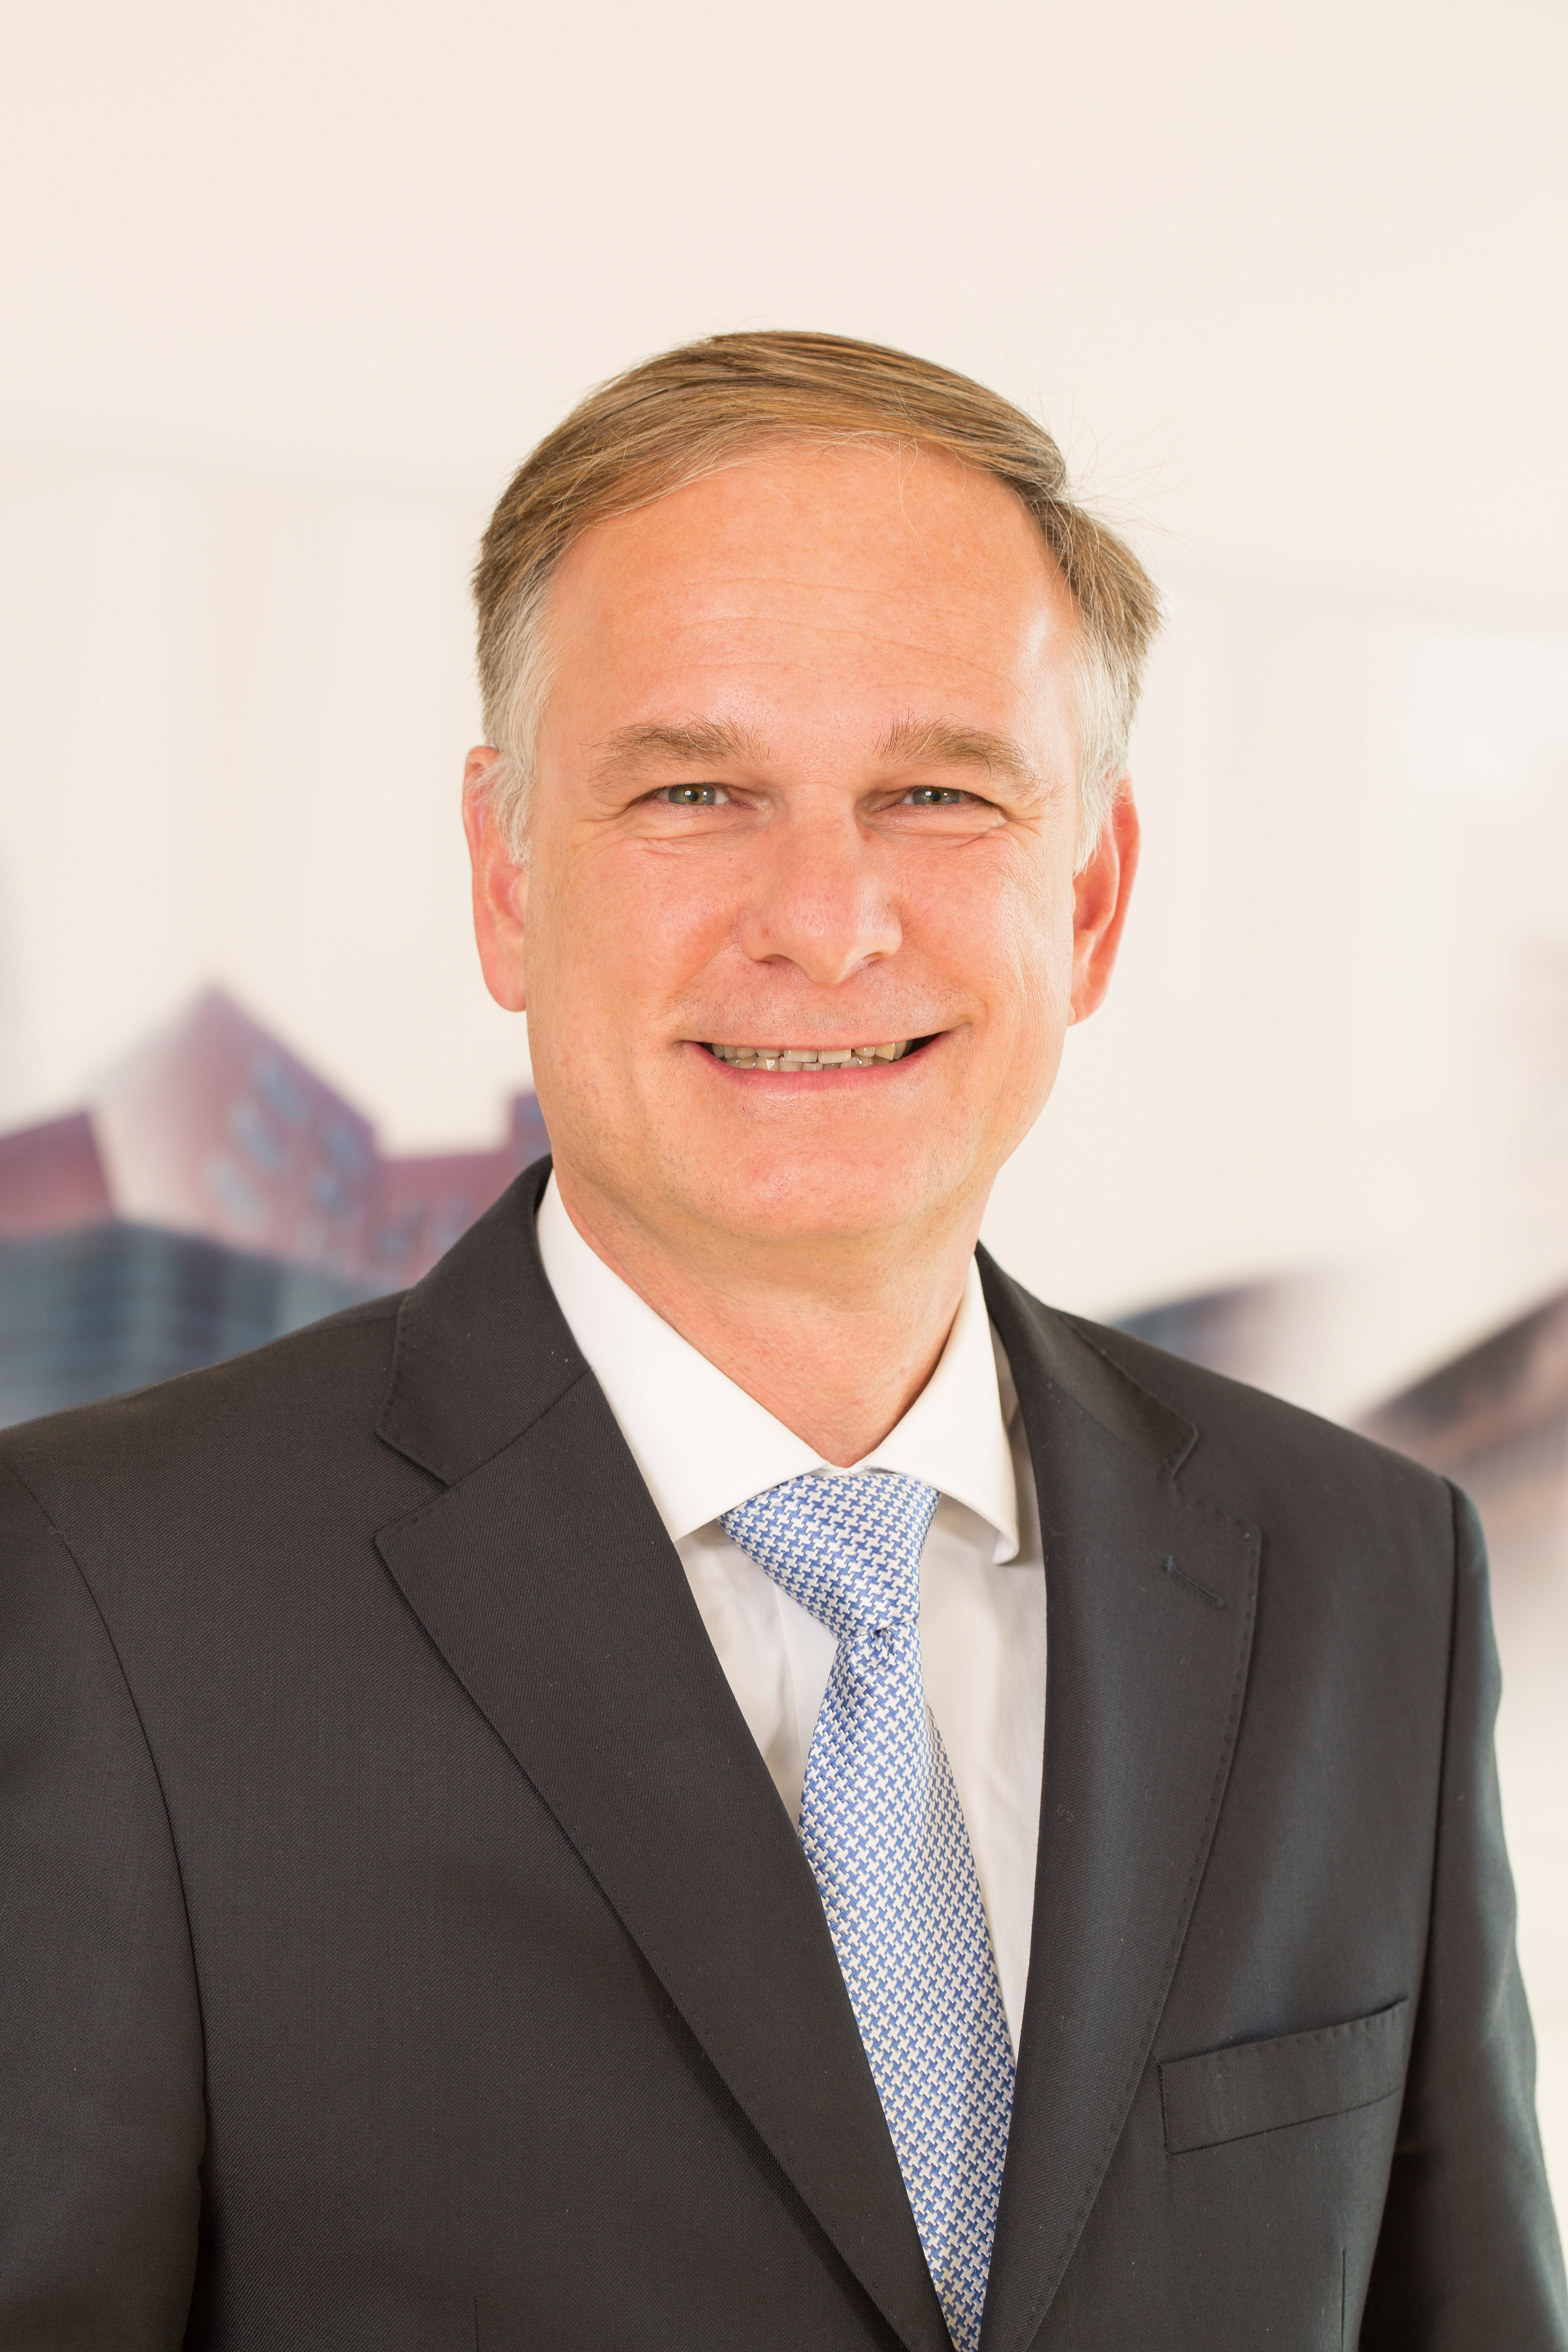 Michael Stölting, Mitglied des Vorstands der NRW.BANK. Foto: © NRW.BANK/Christian Lord Otto